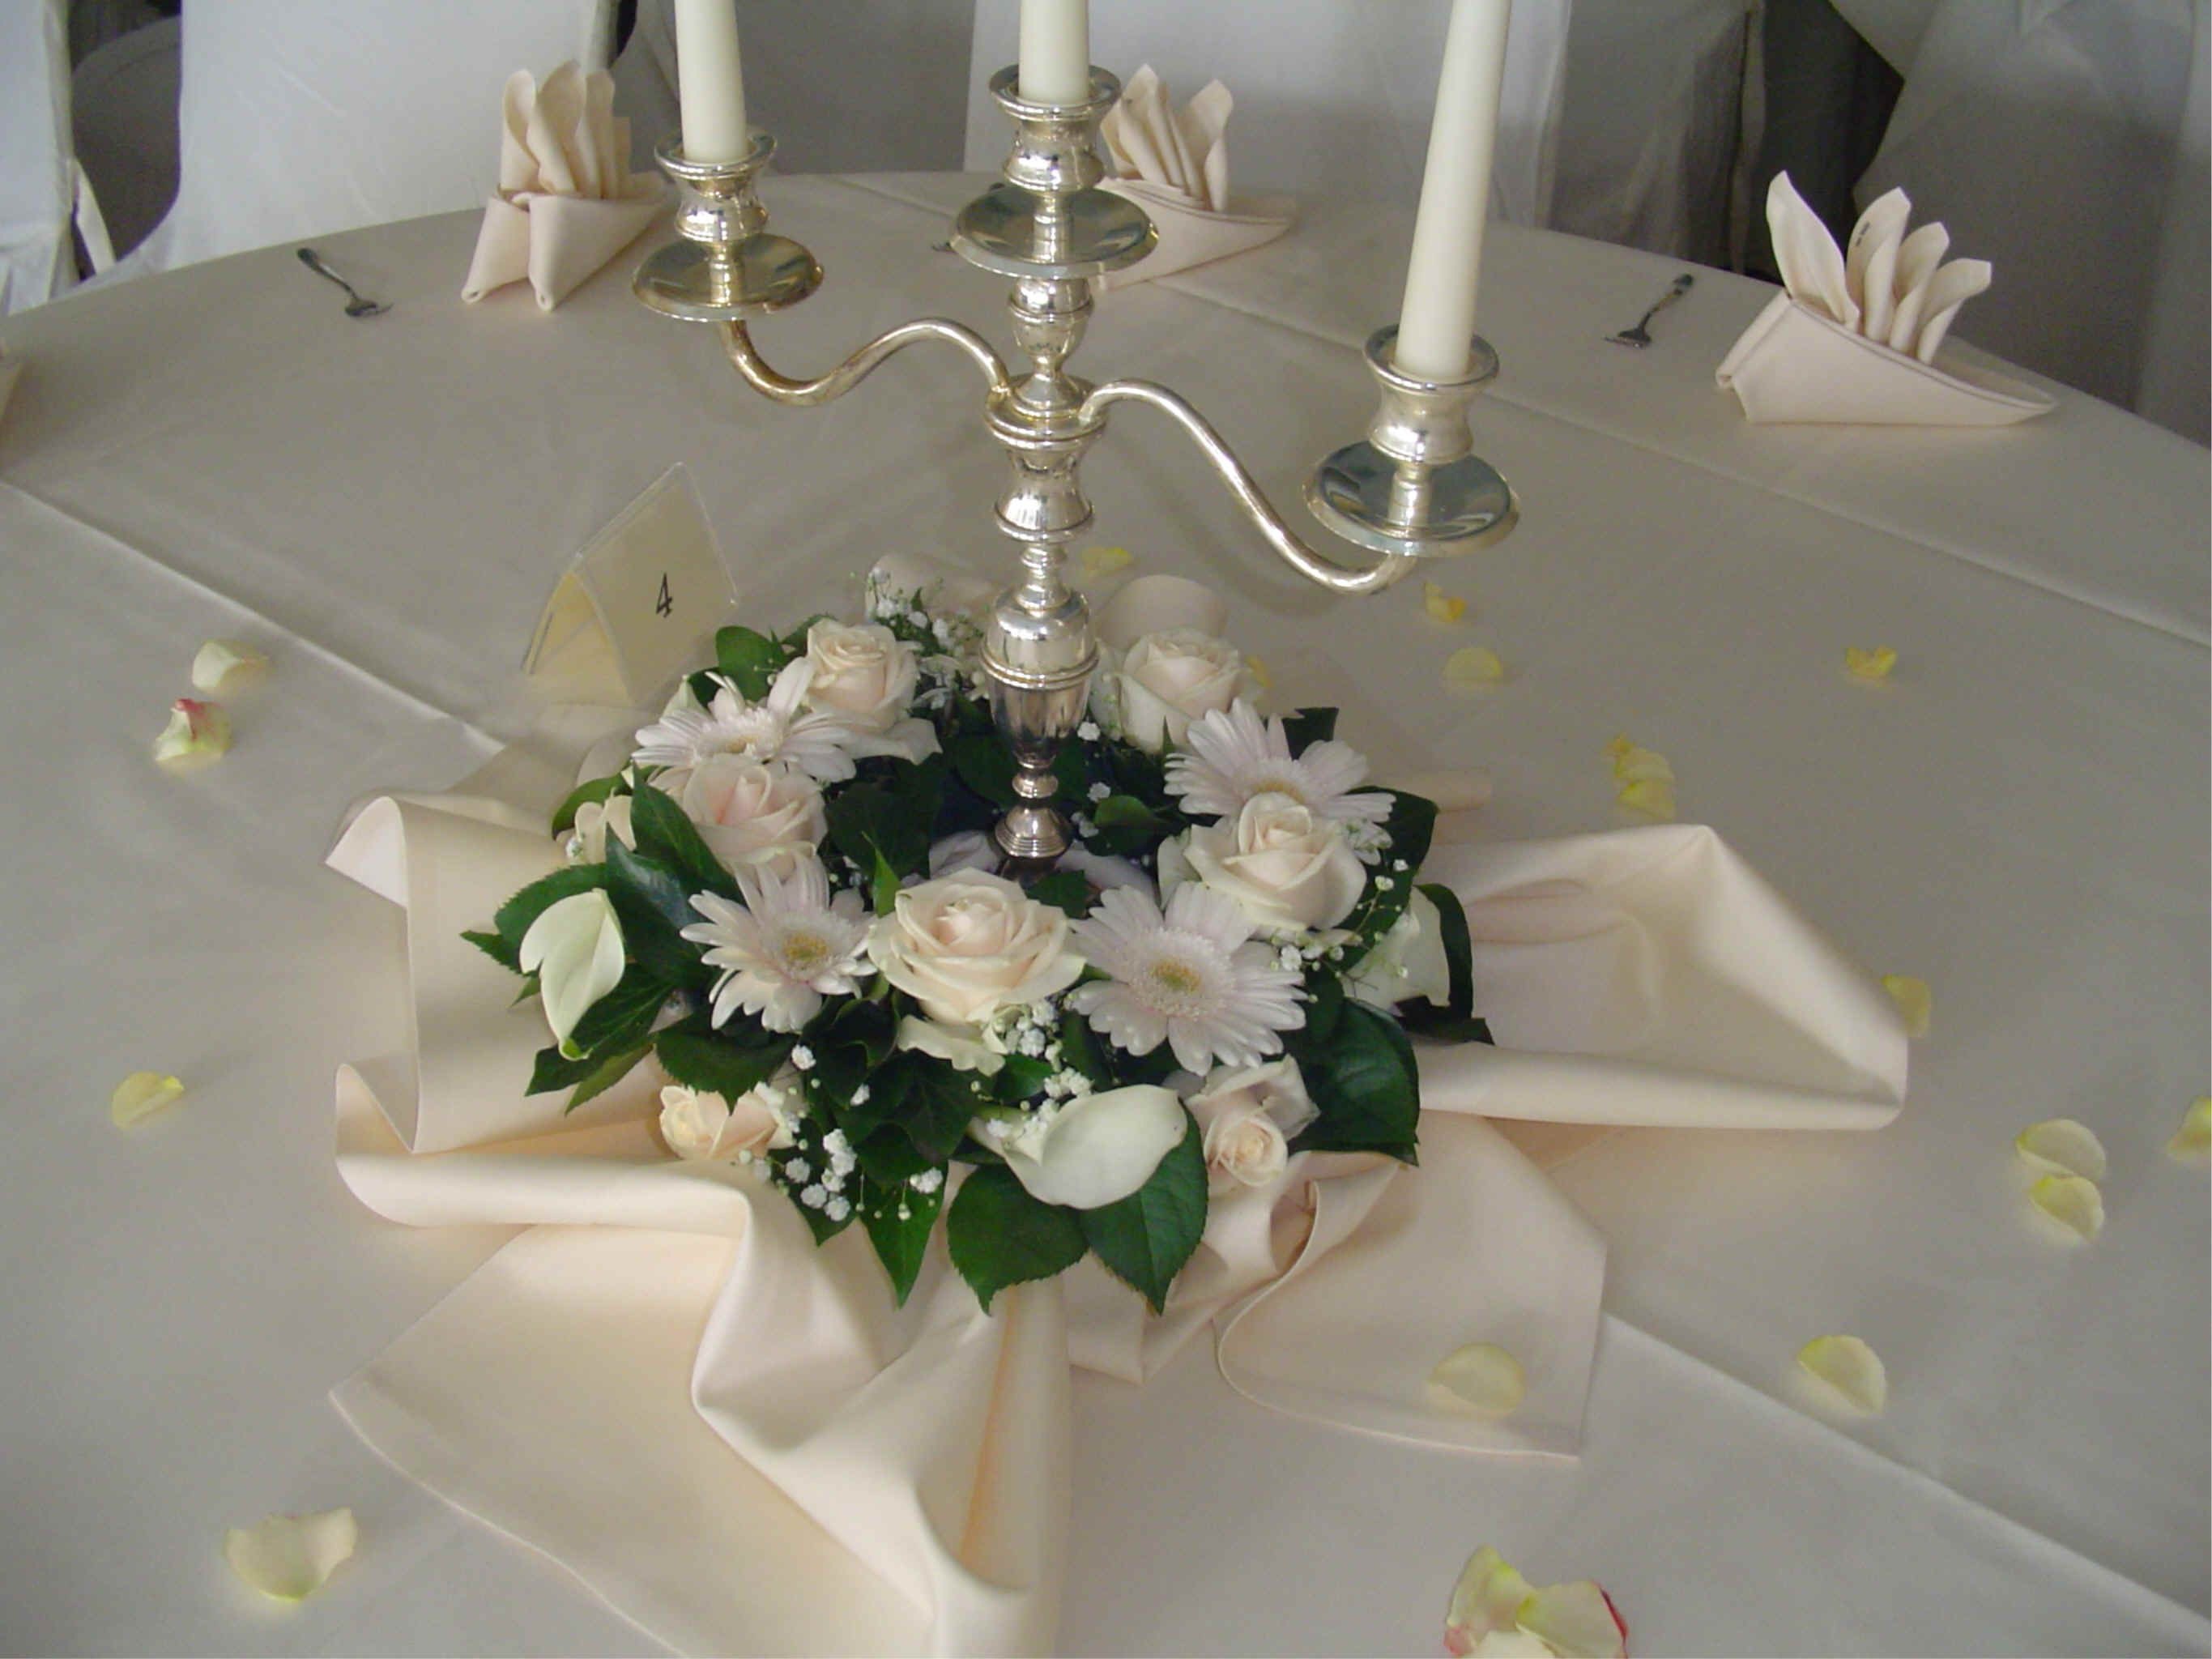 Blumen Tischdeko Hochzeit Runde Tische
 blumenschmuck hochzeit kerzenständer runde tische Google